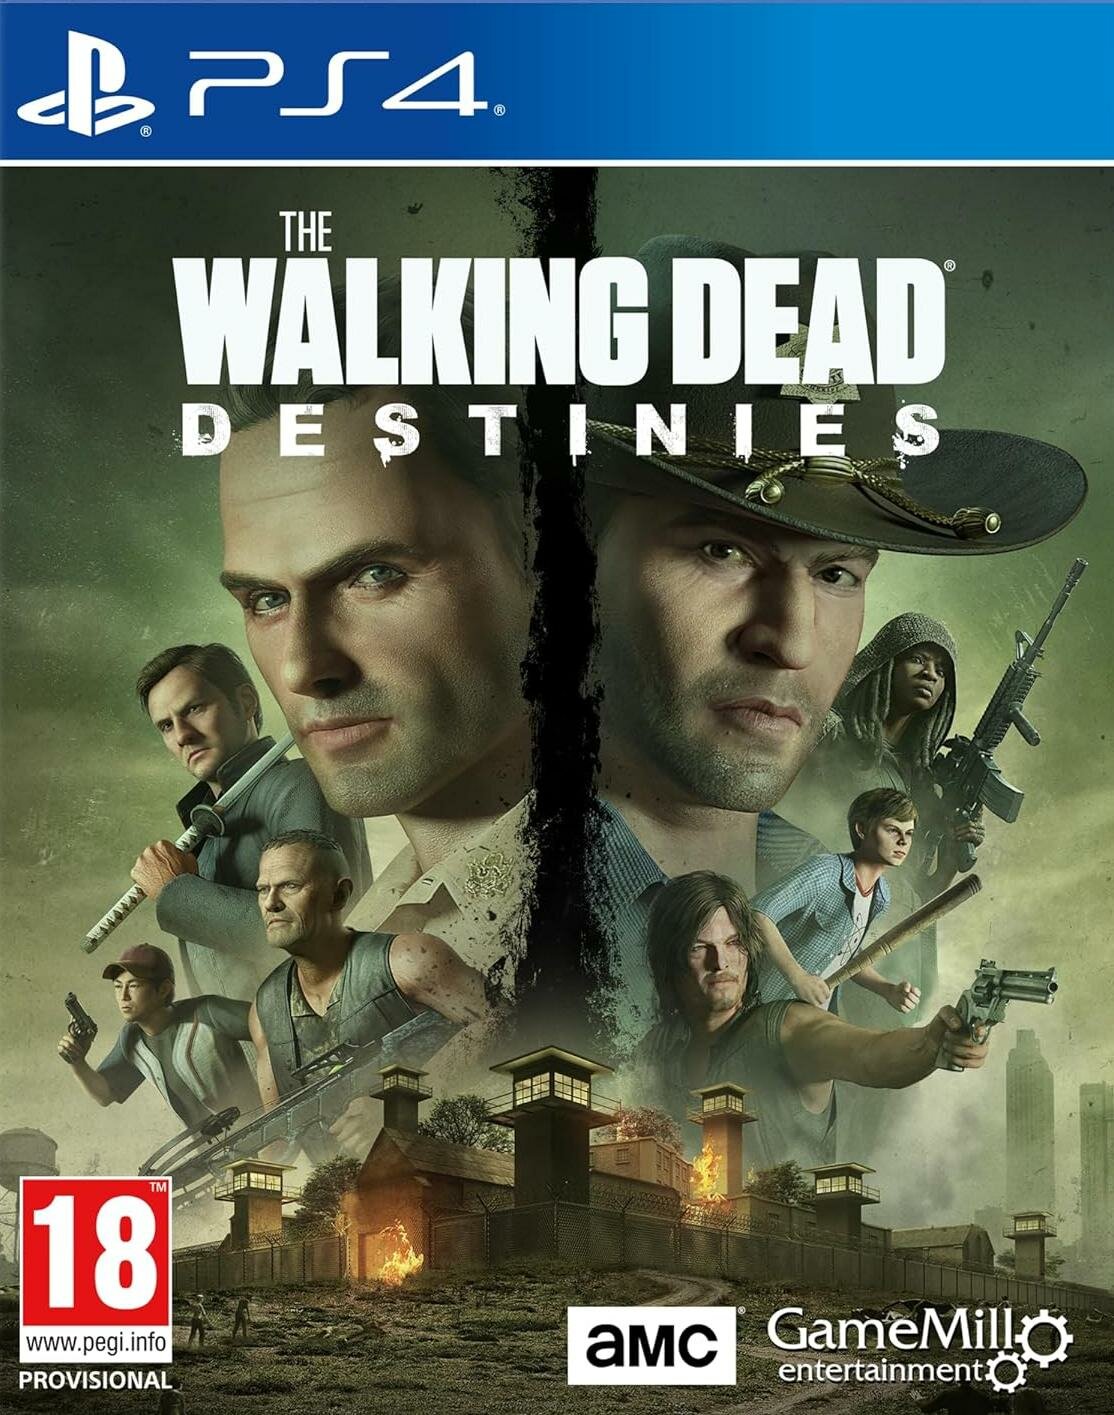 The Walking Dead (Ходячие мертвецы): Destinies (PS4) английский язык